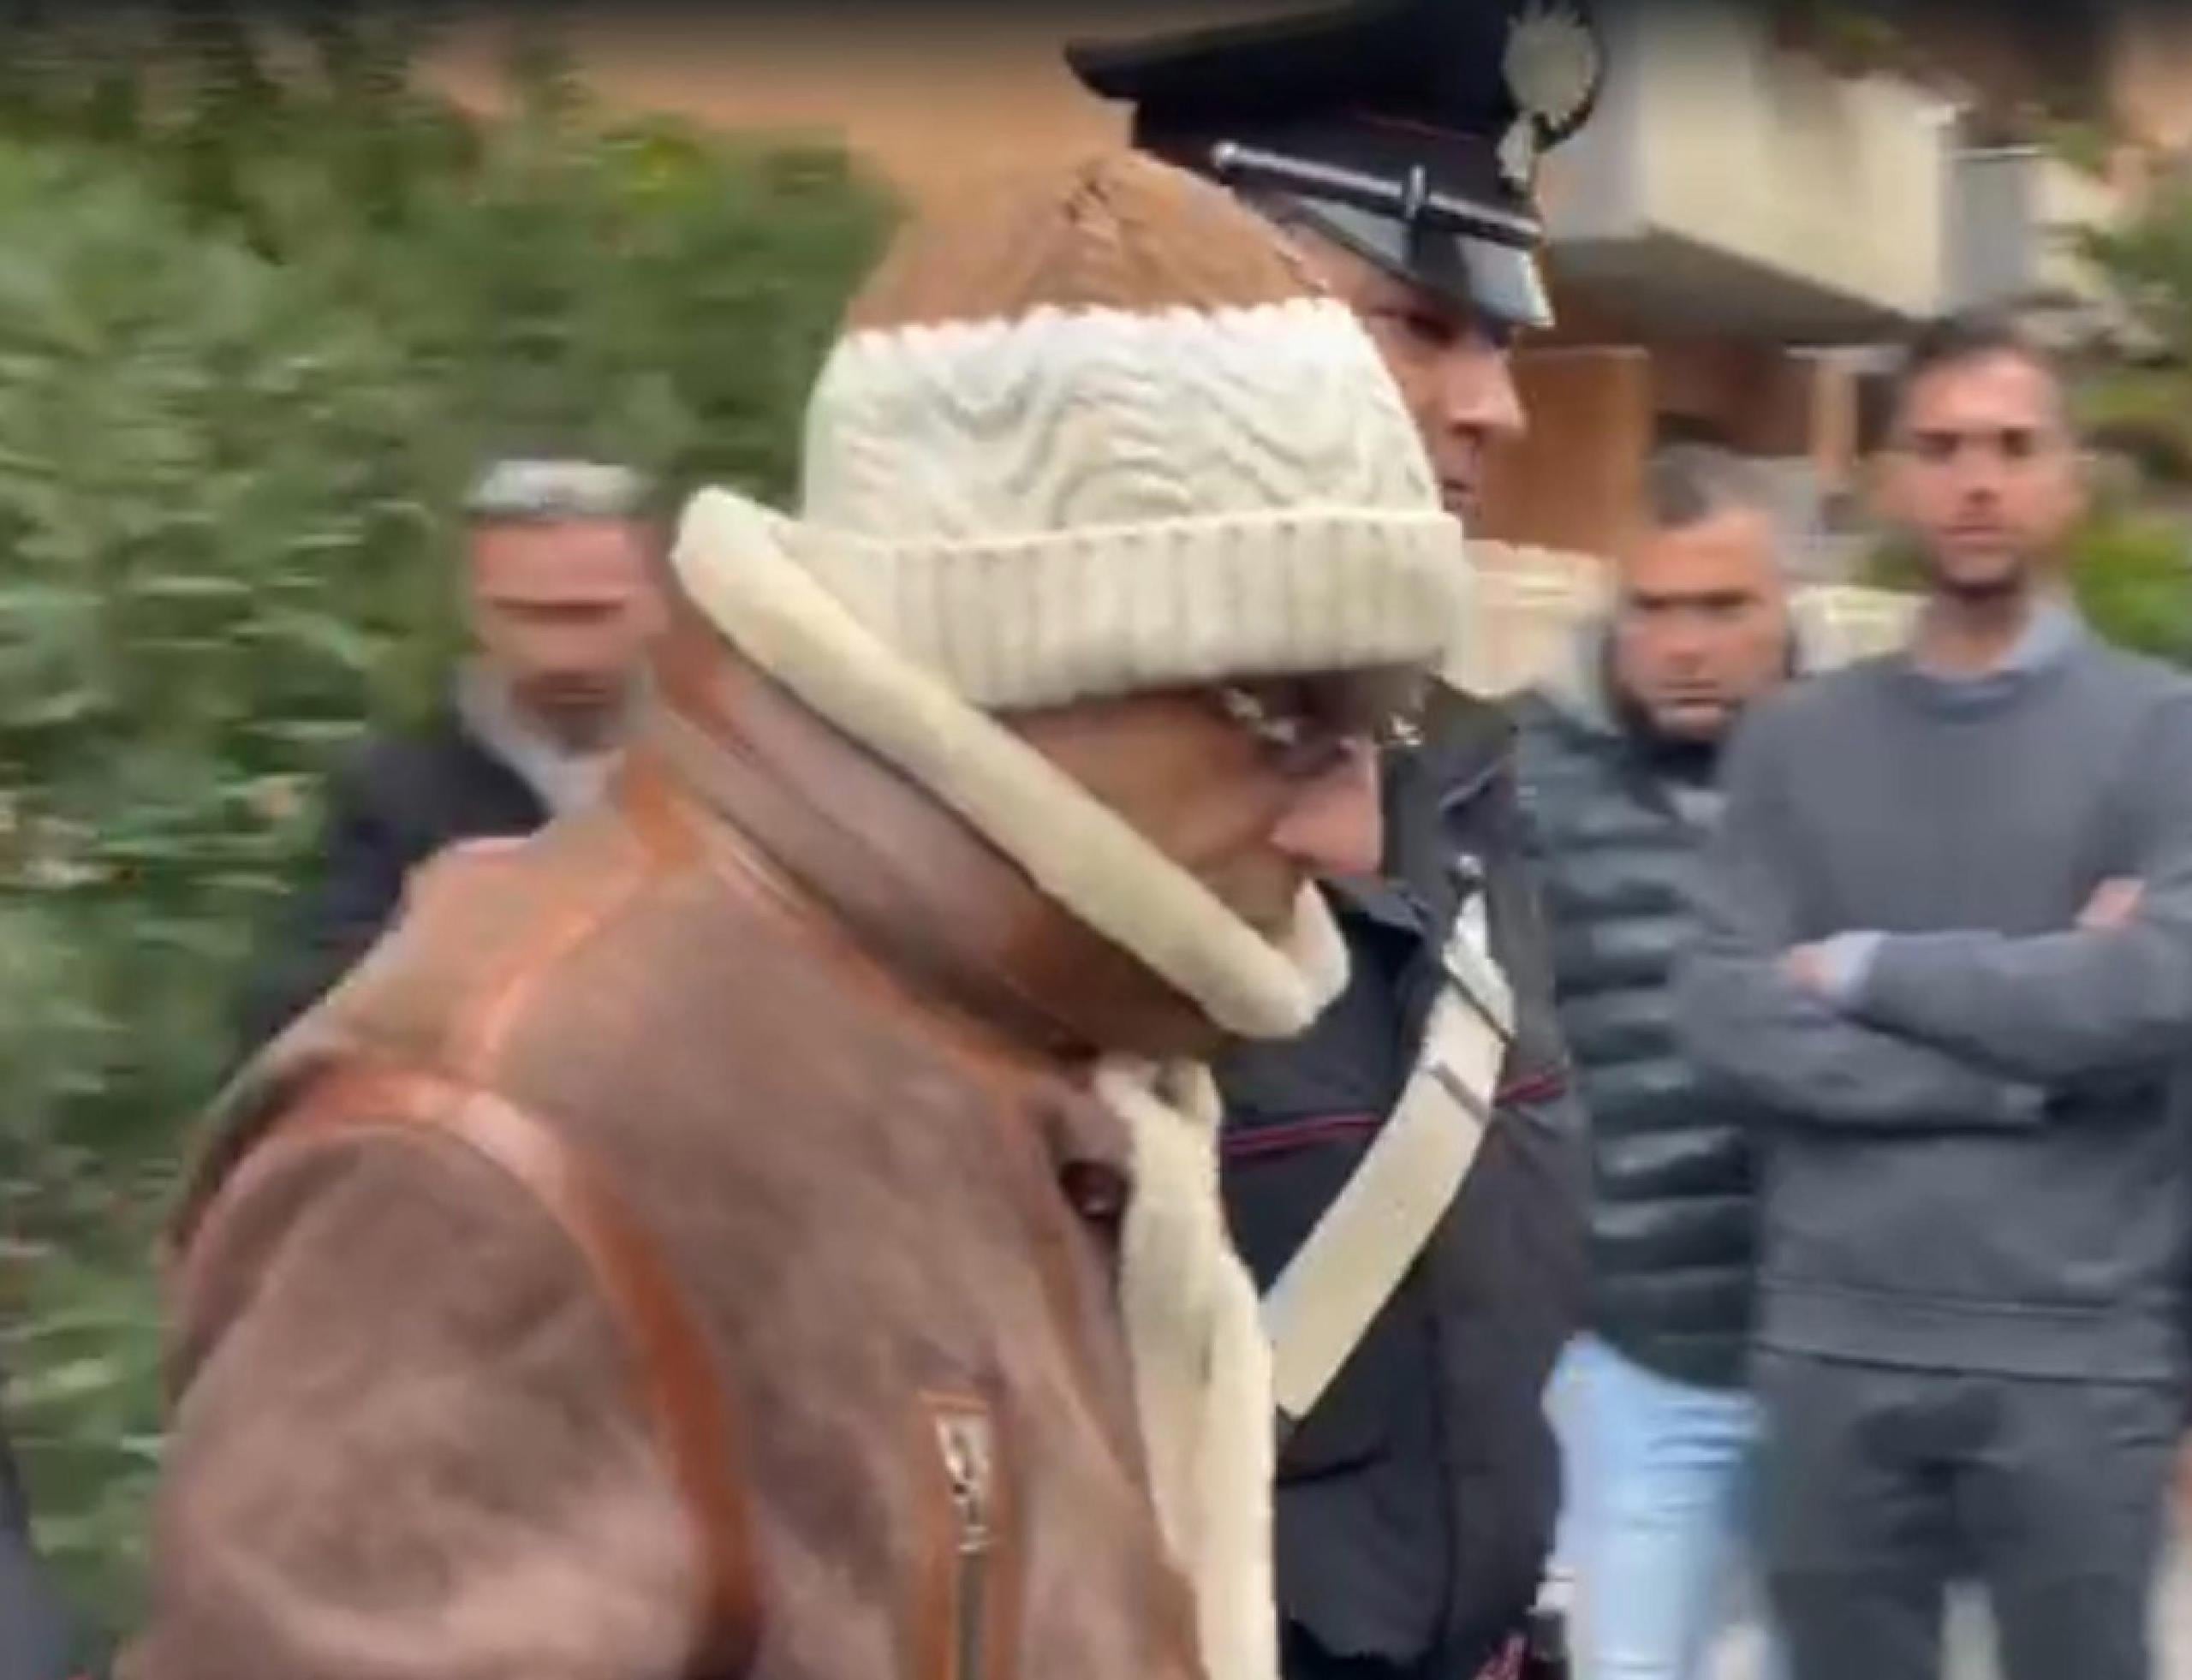 El último jefe de Cosa Nostra, la mafia siciliana, Matteo Messina, fue detenido en Palermo, Sicilia el pasado lunes.